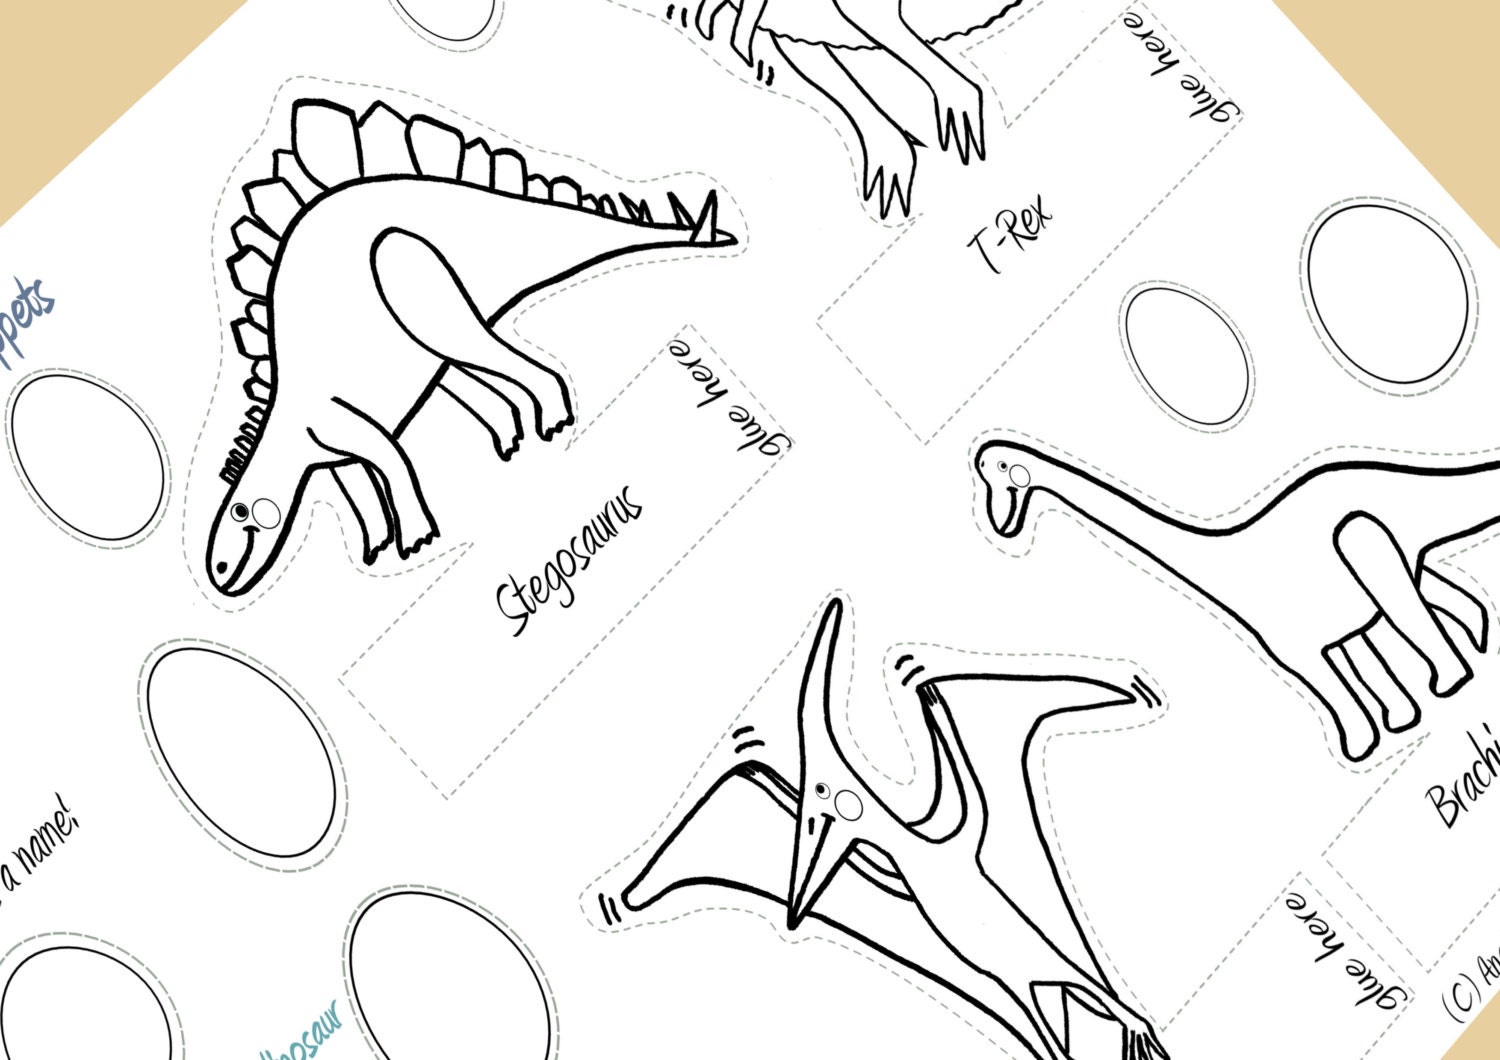 LIHAO 10pcs Juego de Marionetas de Dedo de Dinosaurio Títeres de Mano Juguete Cuentos para Niños Bebé Educativa Cumpleaños Regalo para Niños Infantilñes 10 Dinosaurios+10 Huevos 